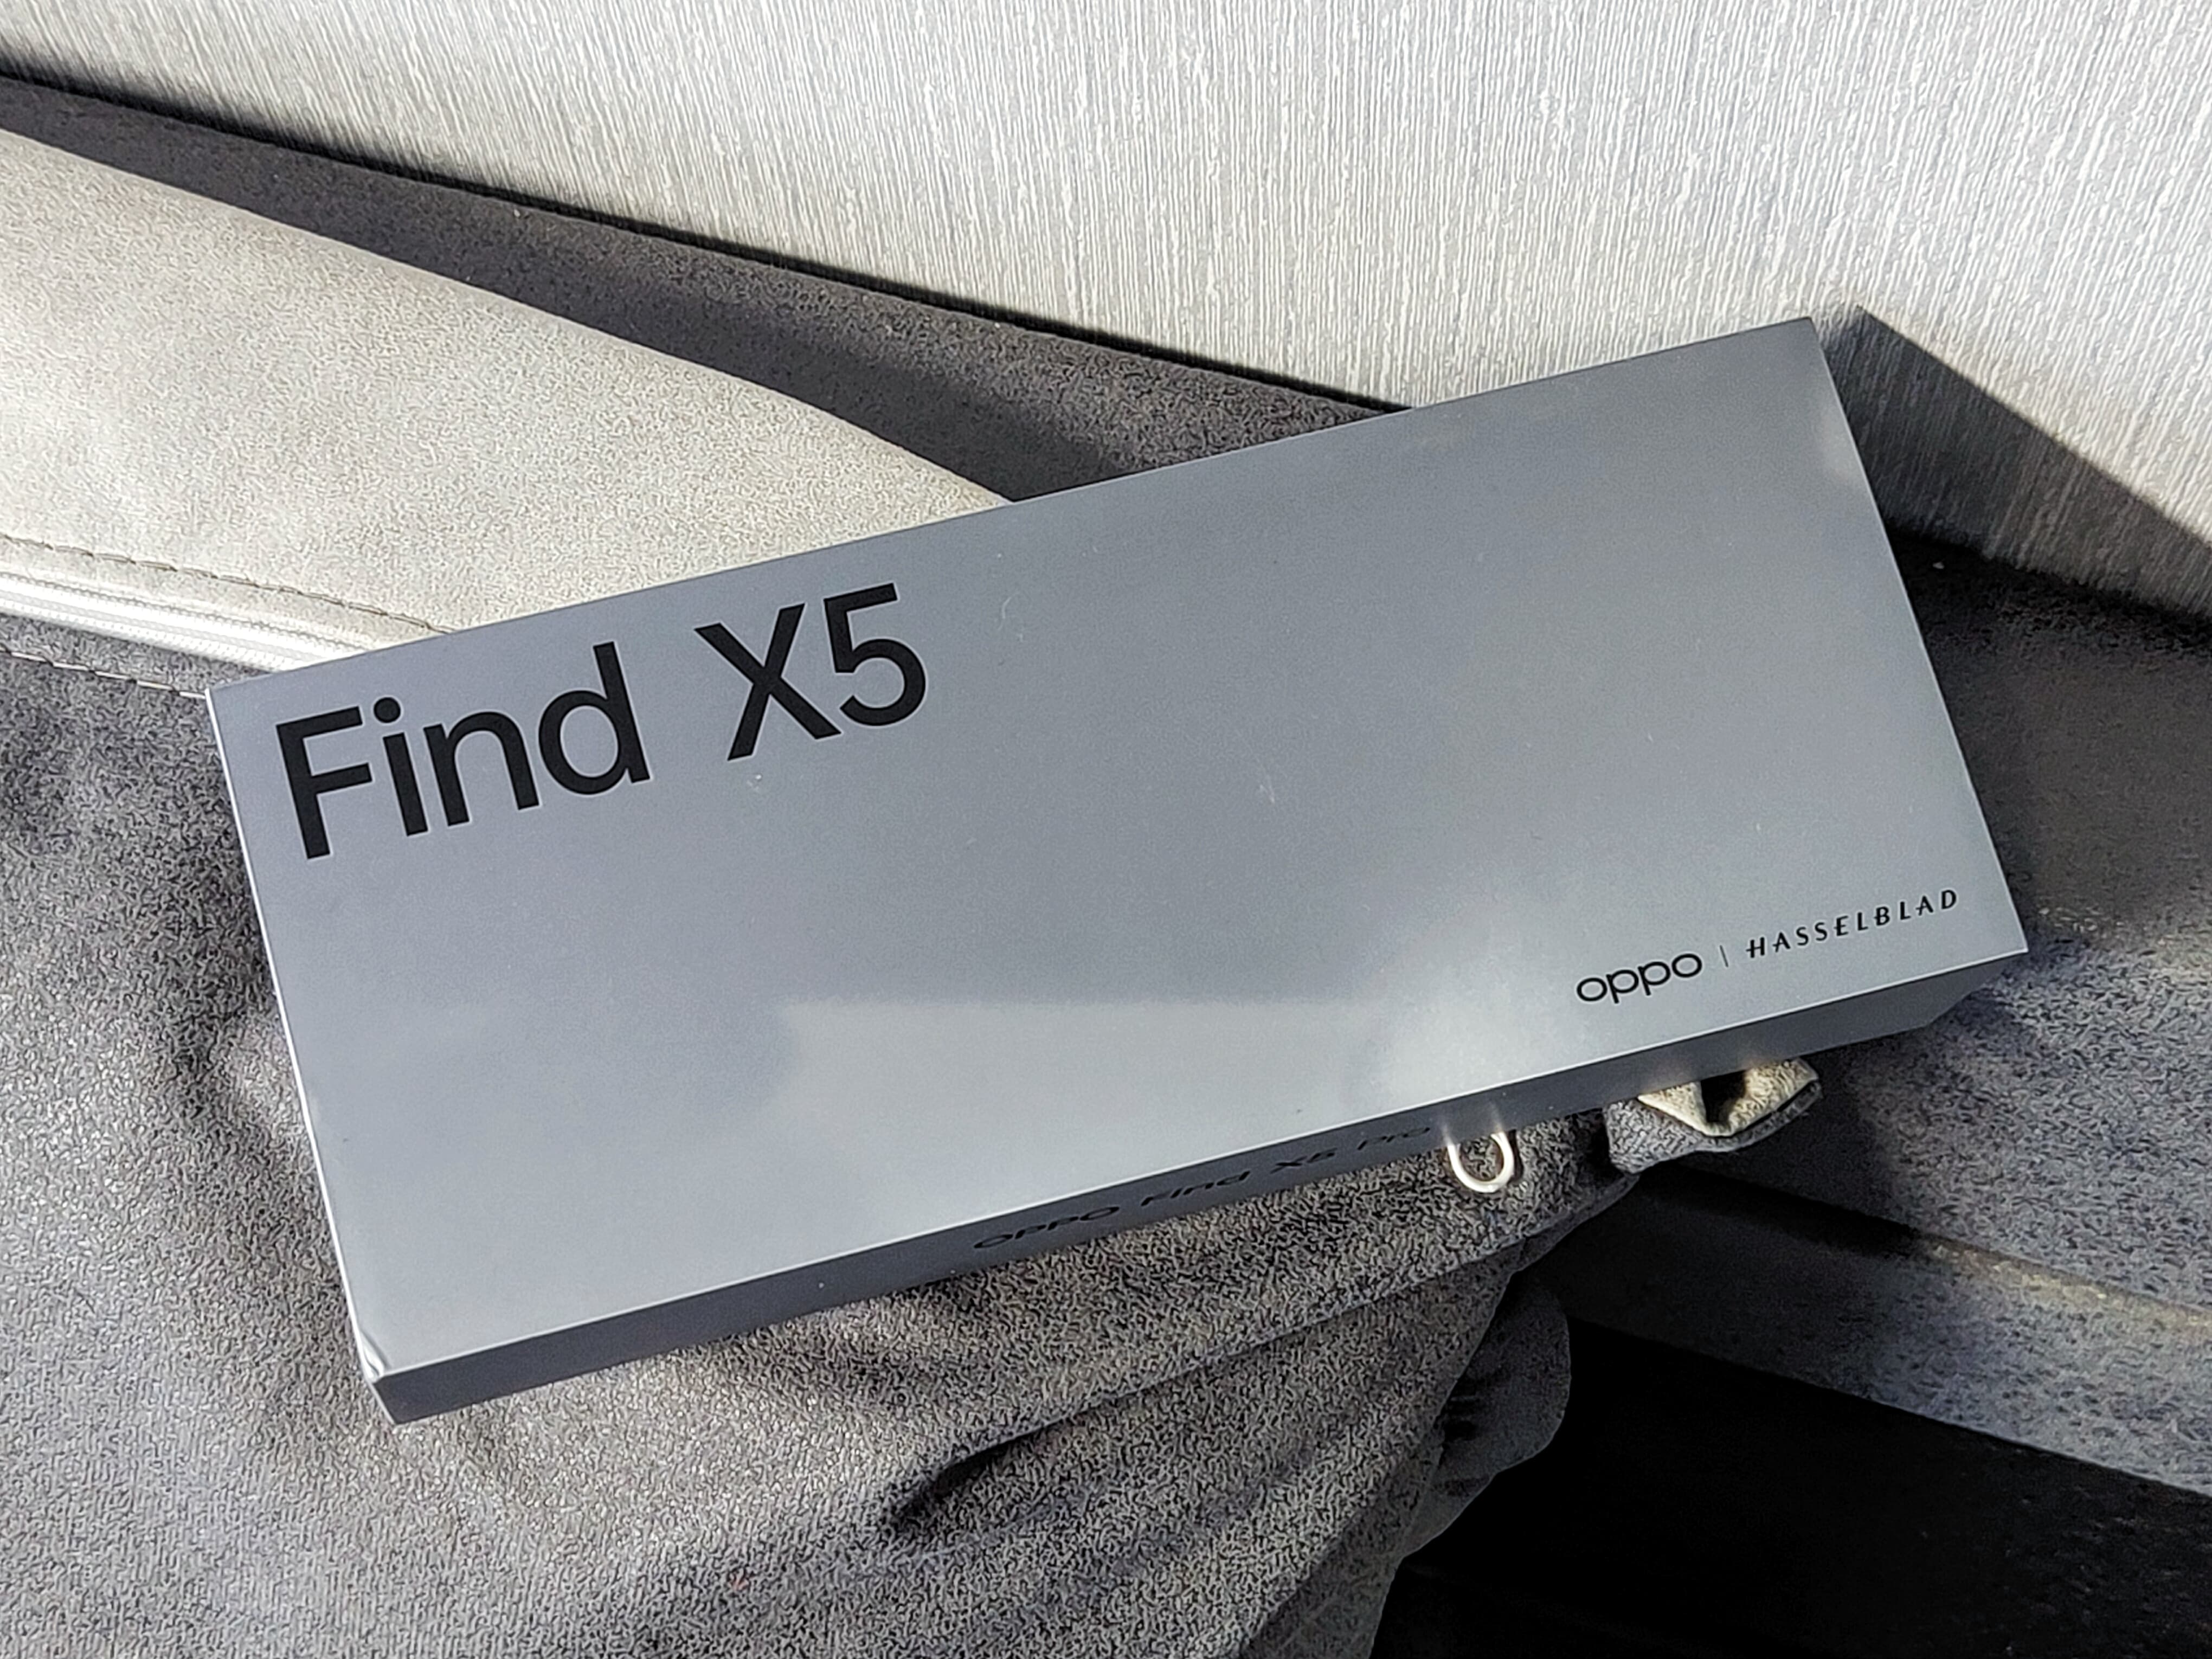 Find X5 Pro评测：首款自研芯片助力 影像实力惊人